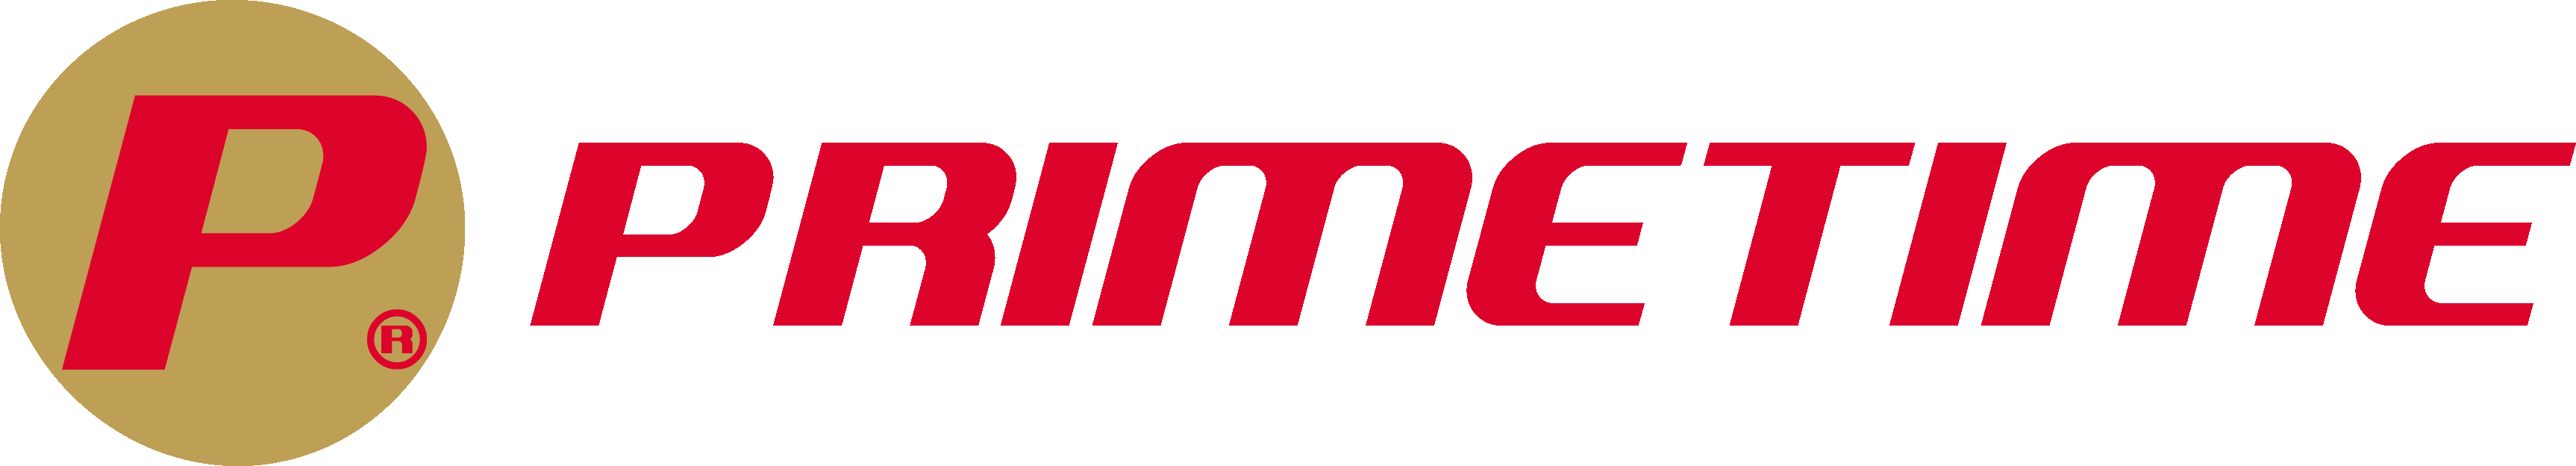 Primetime-logo